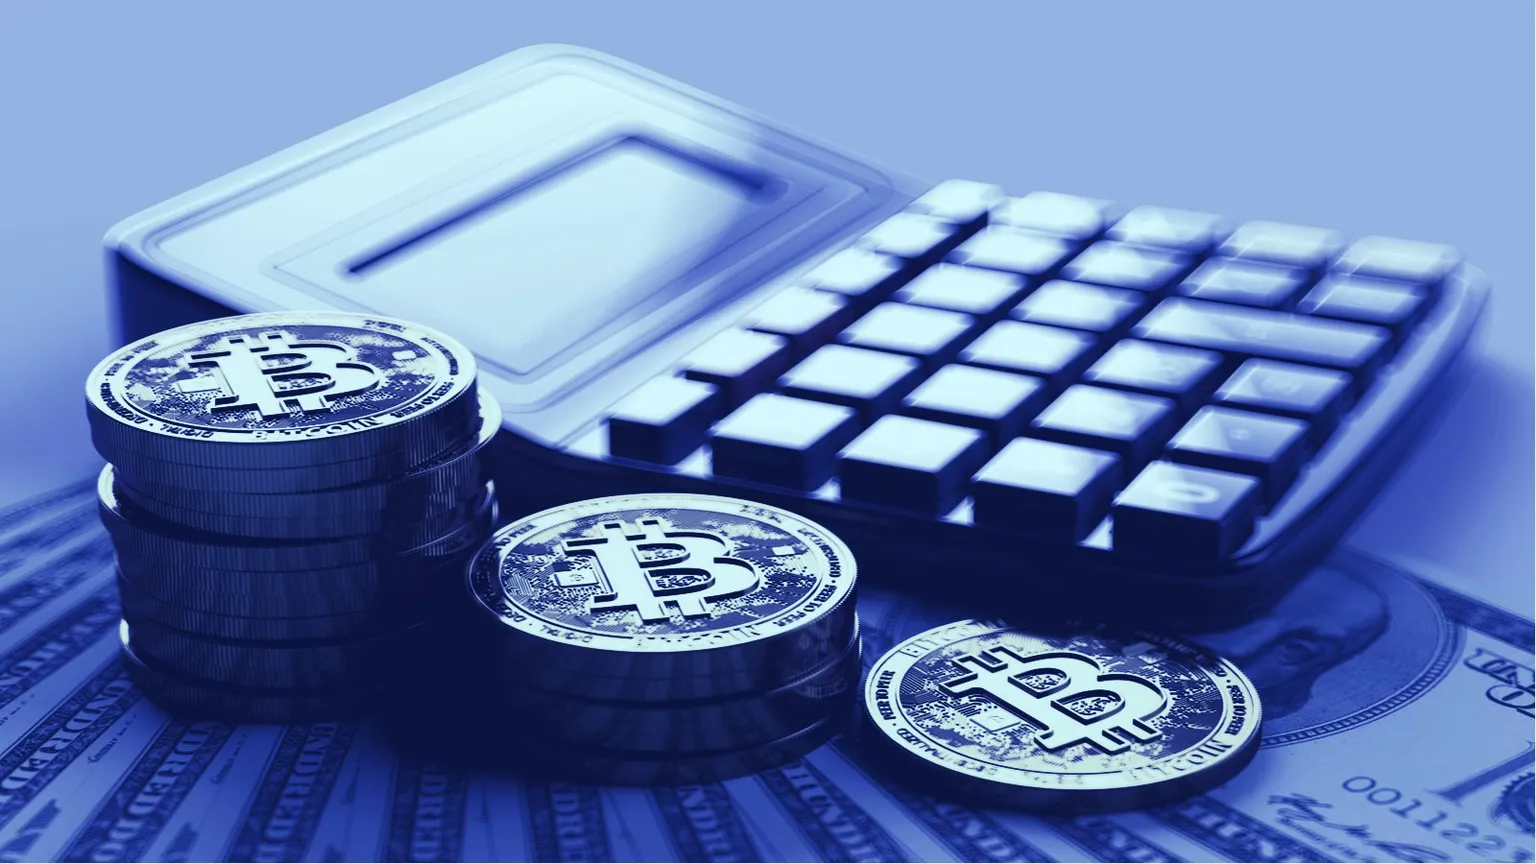 Las comisiones por transacciones de Bitcoin suben a 2,94 dólares. Imagen: Shutterstock